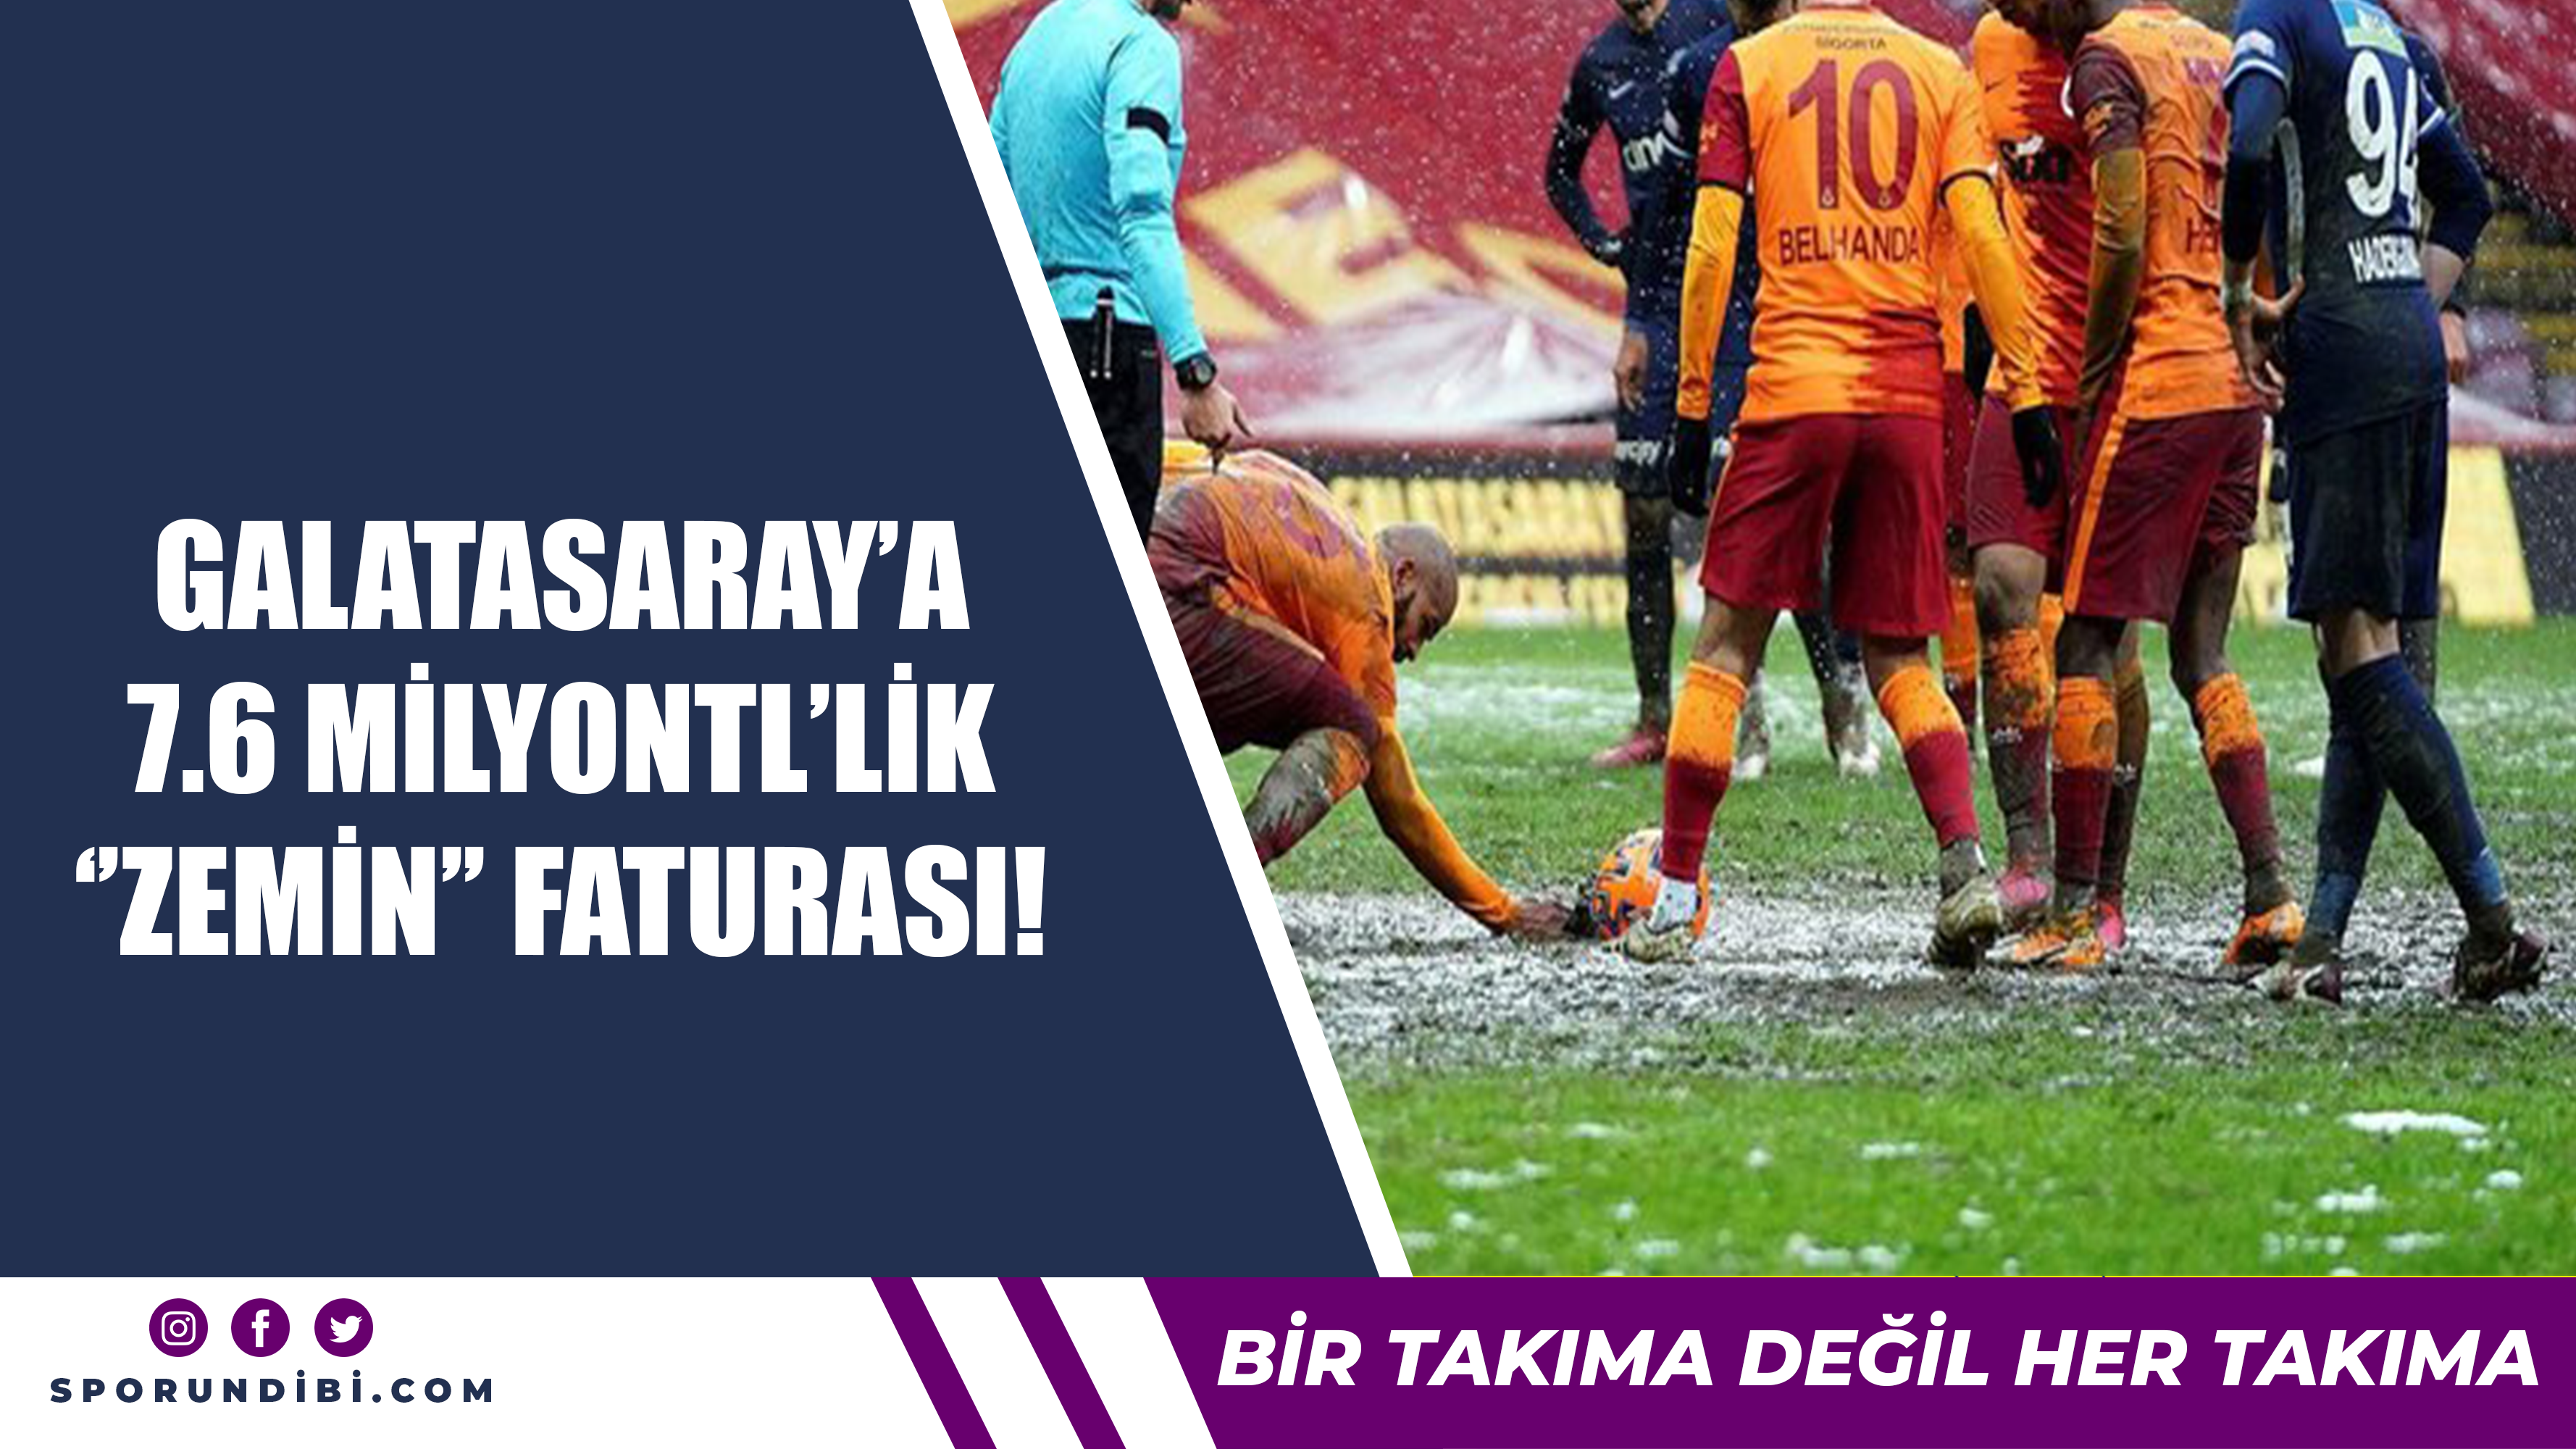 Galatasaray'a 7.6 milyon TL'lik 'zemin' faturası!